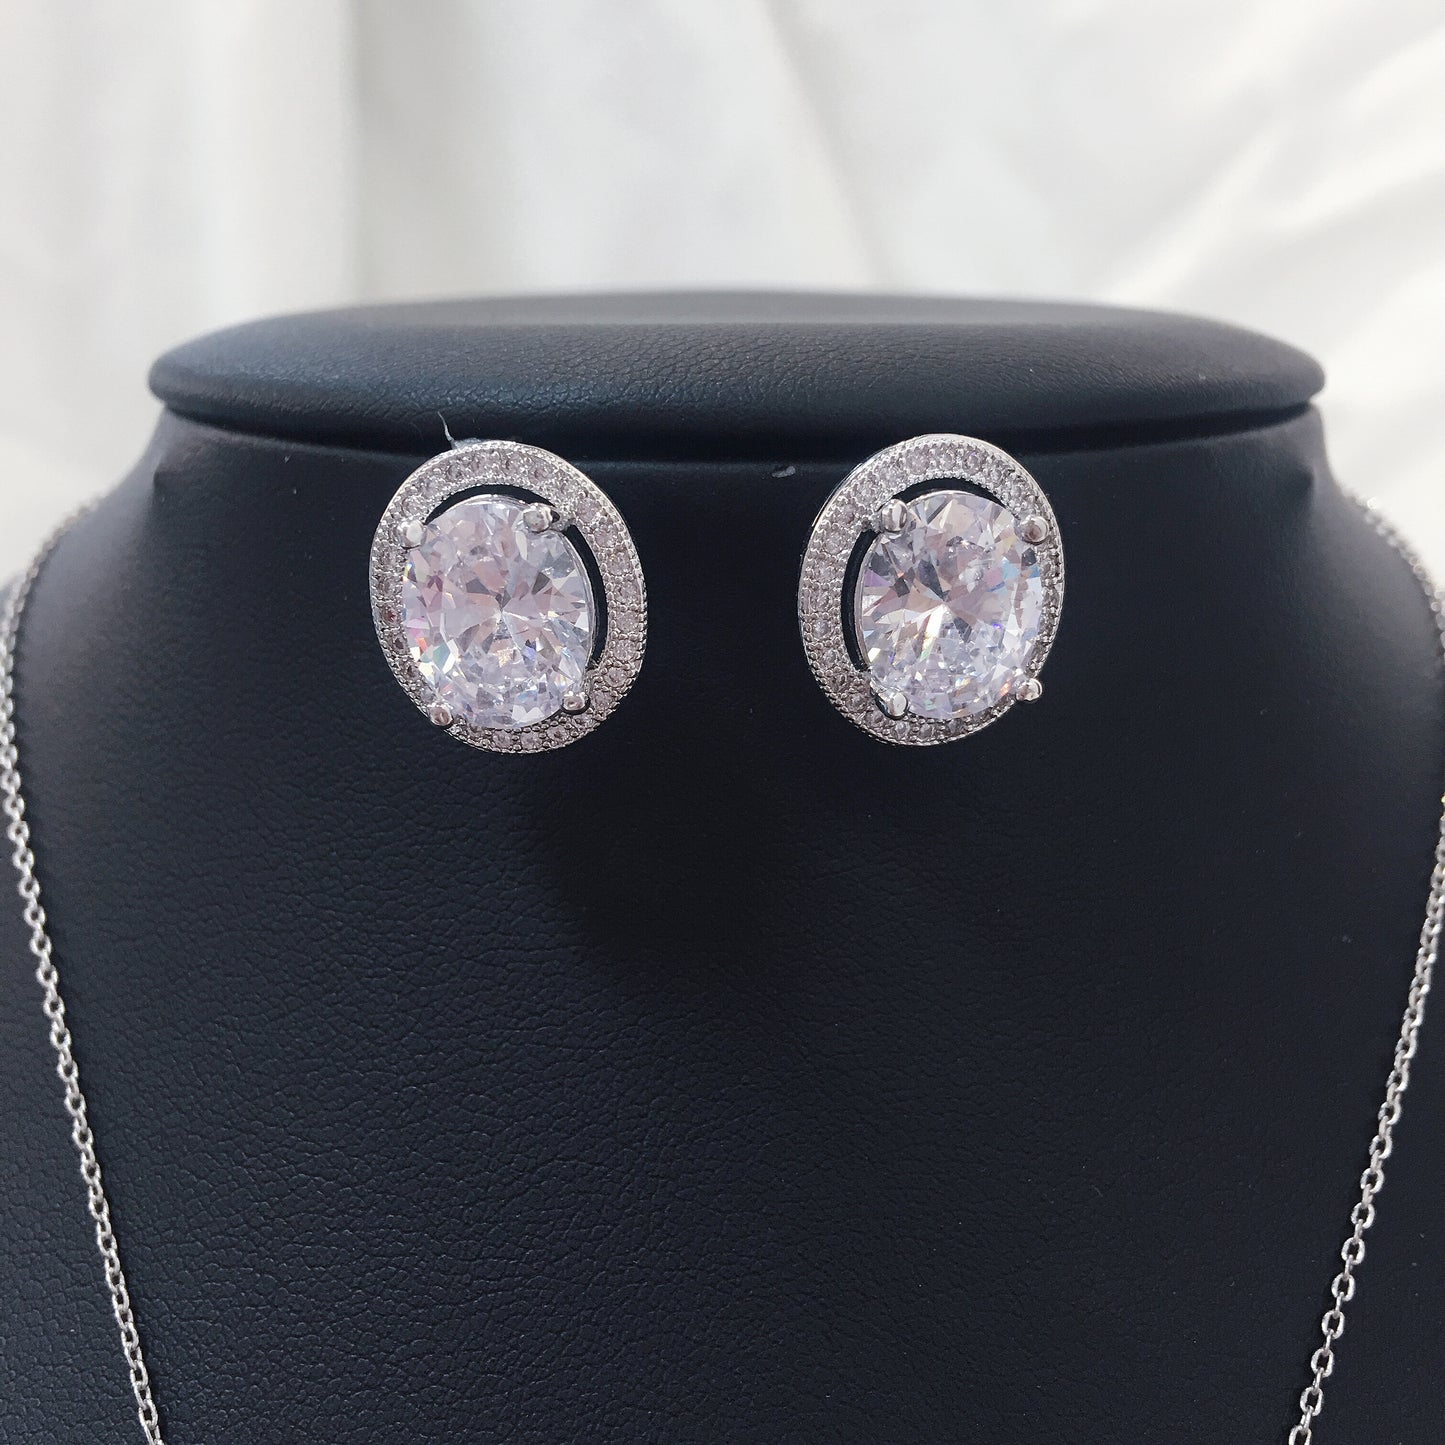 #JMJR002 Ladies' Jewelry Set Alloy Zircon With Cubic Zirconia